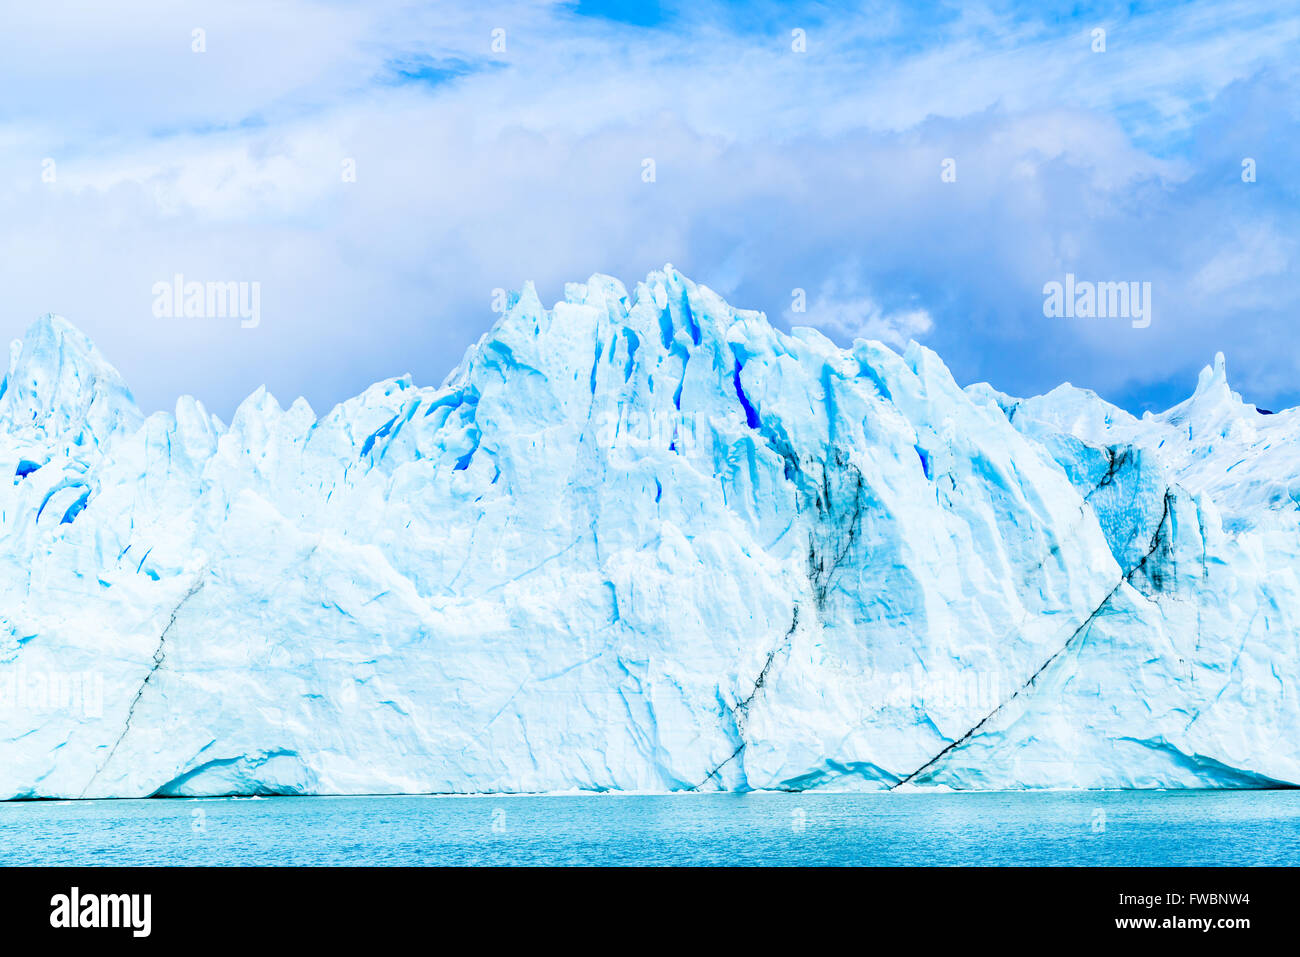 View of Ice Mountain at Perito Moreno Glacier in Argentina Stock Photo